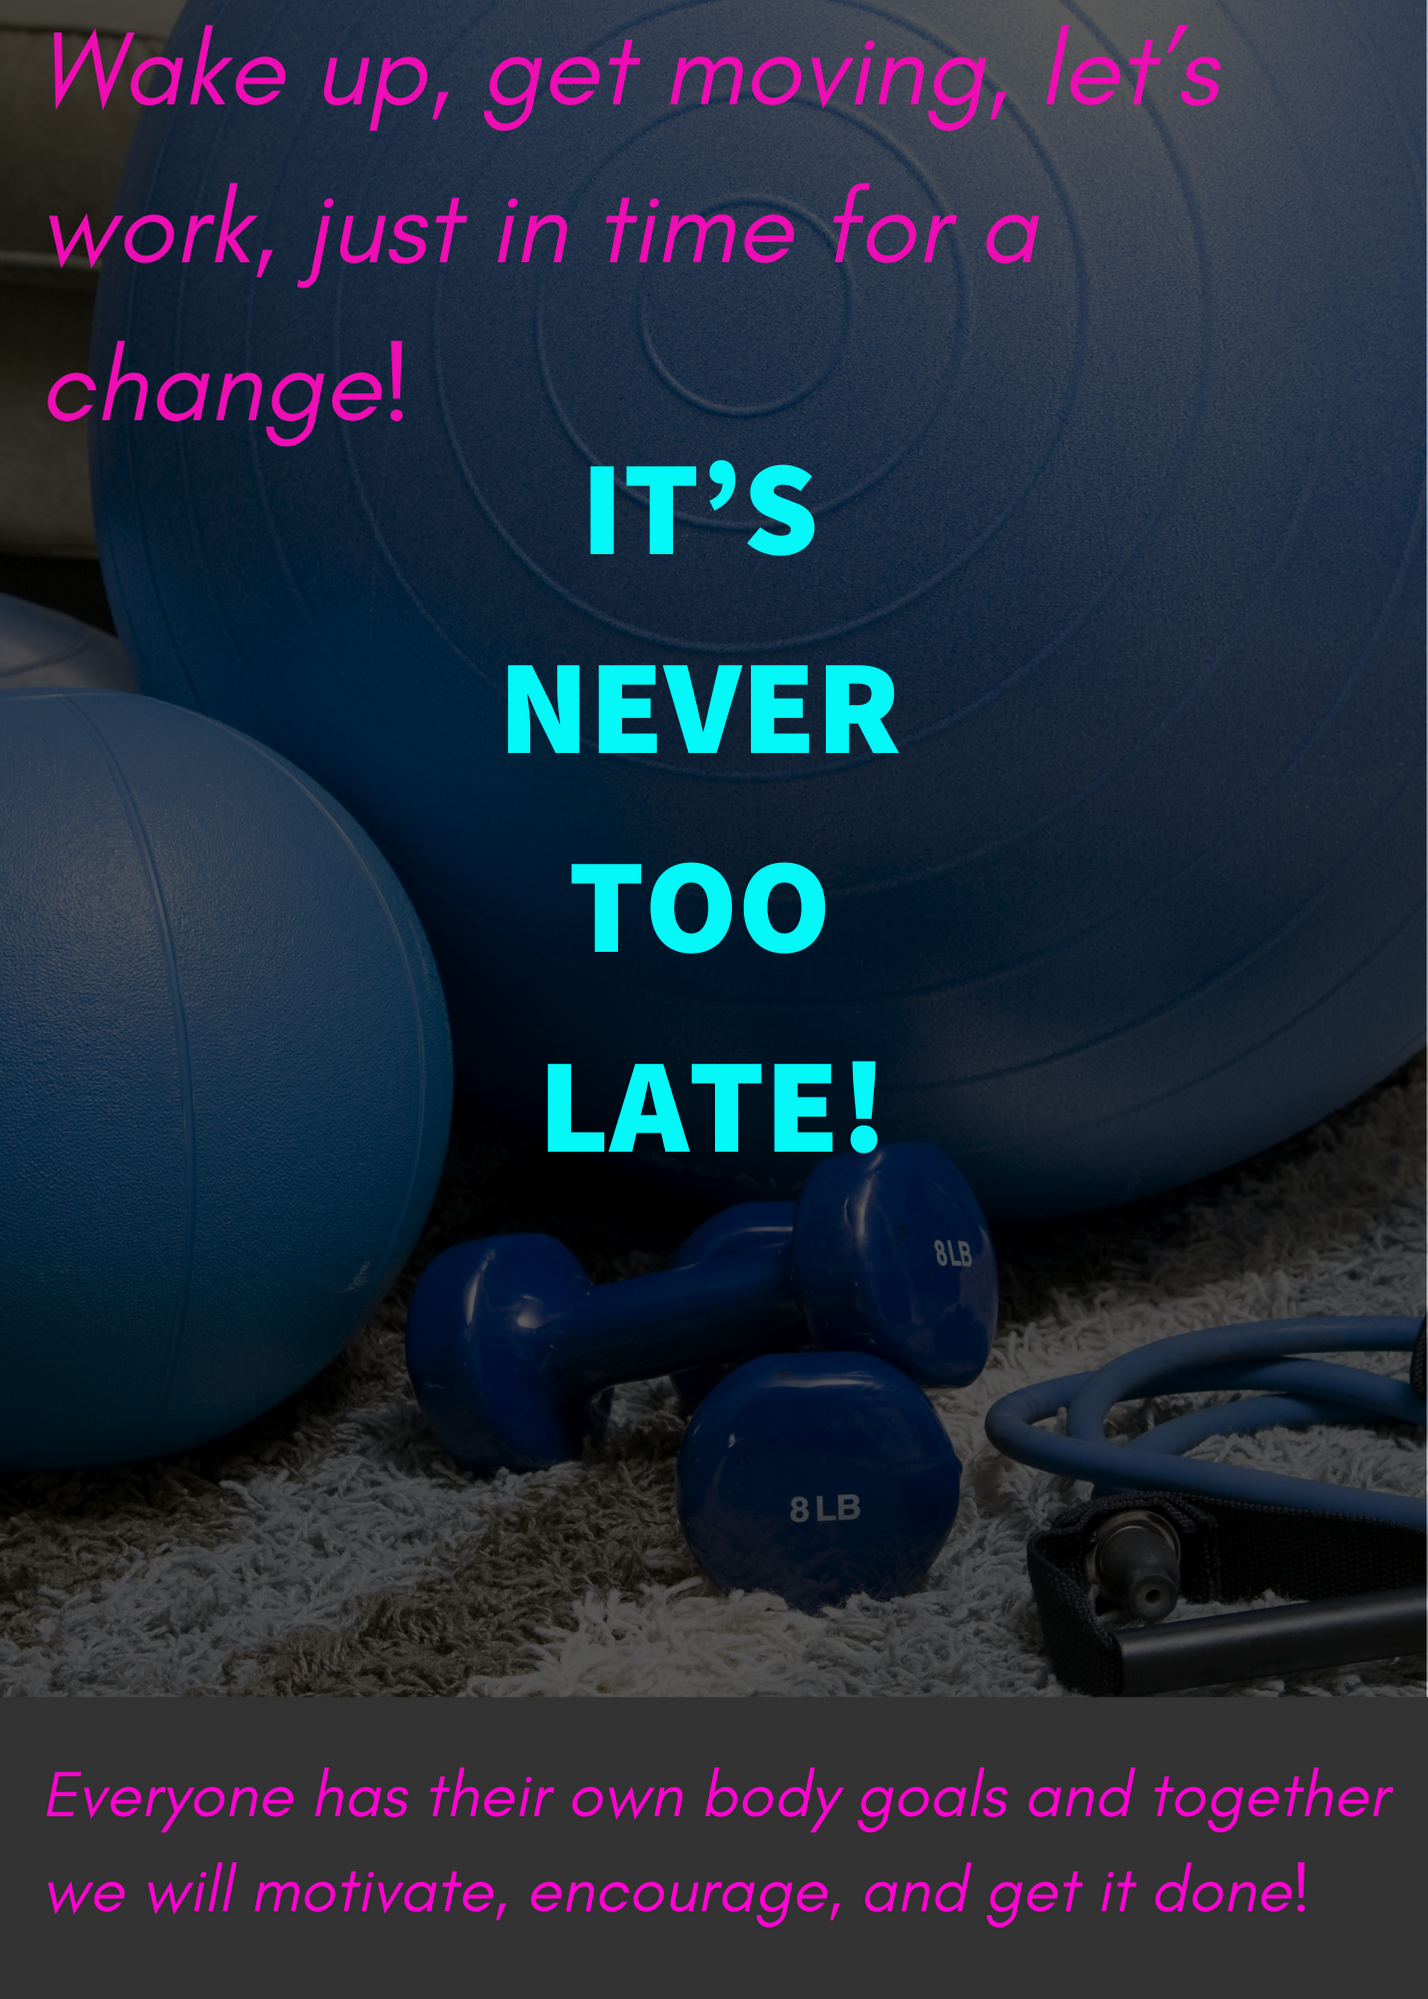 Its never to late!: Wake up and lets get moving